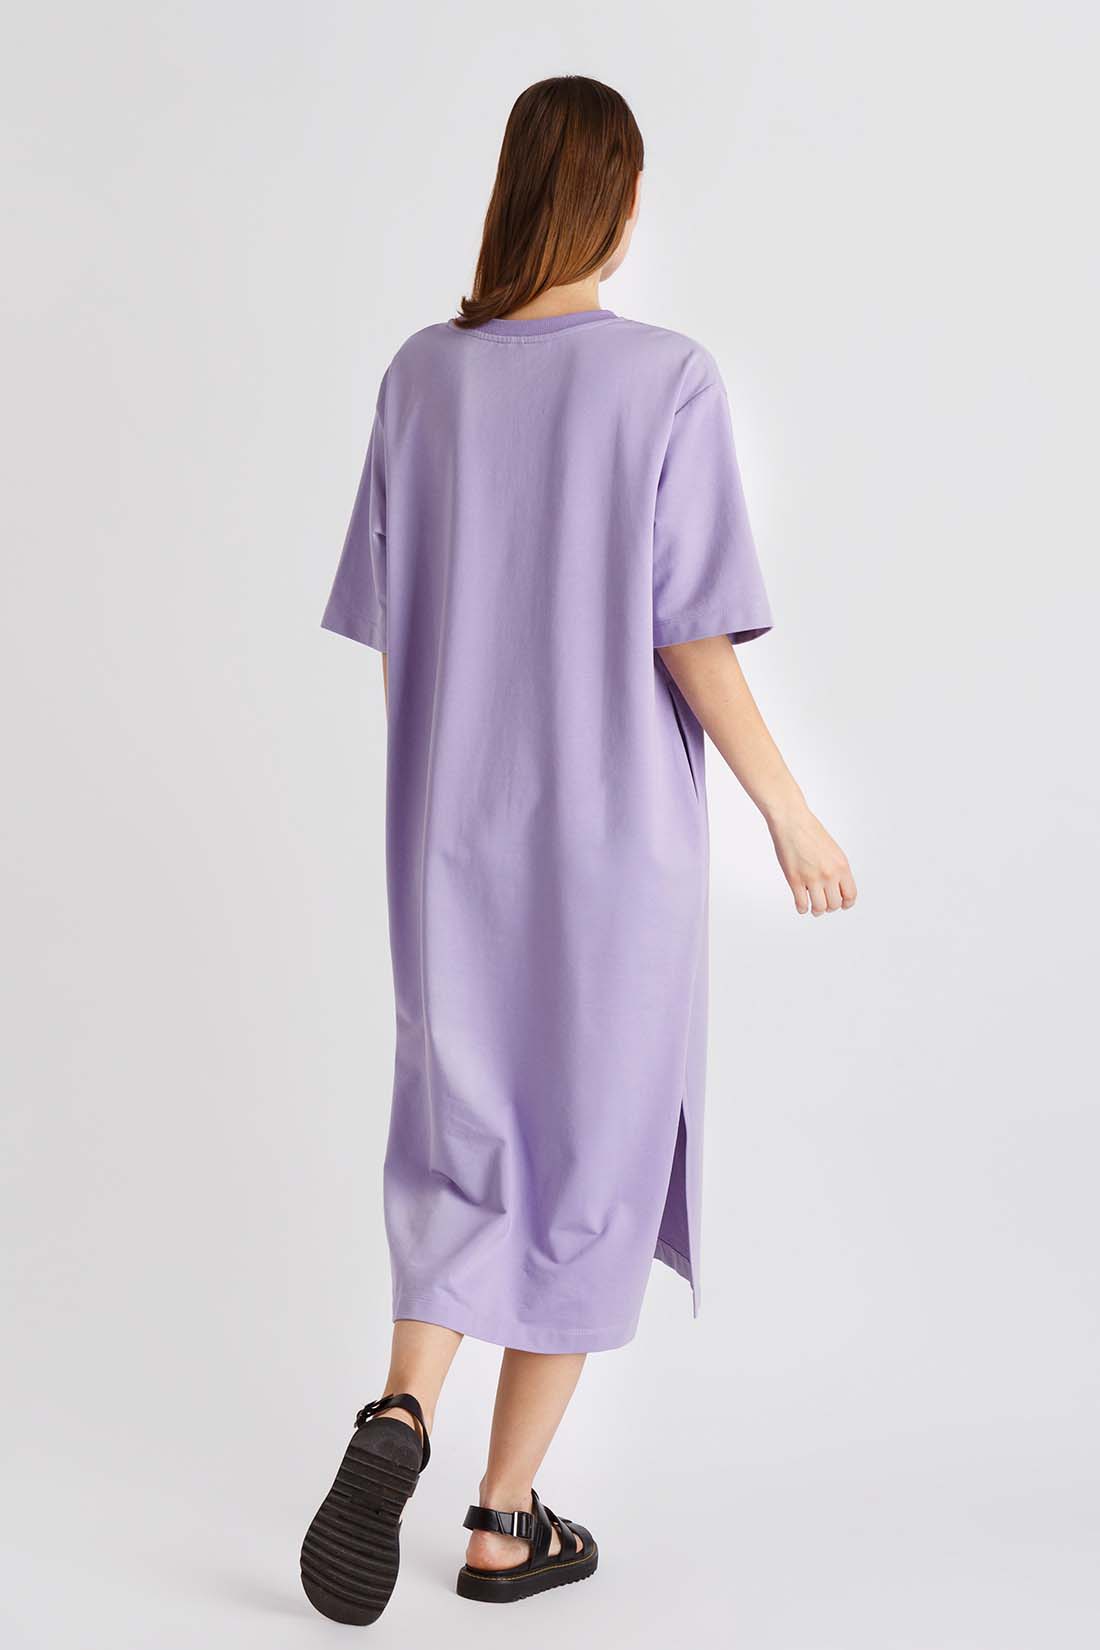 Платье (арт. baon B4522028), размер M, цвет фиолетовый Платье (арт. baon B4522028) - фото 2